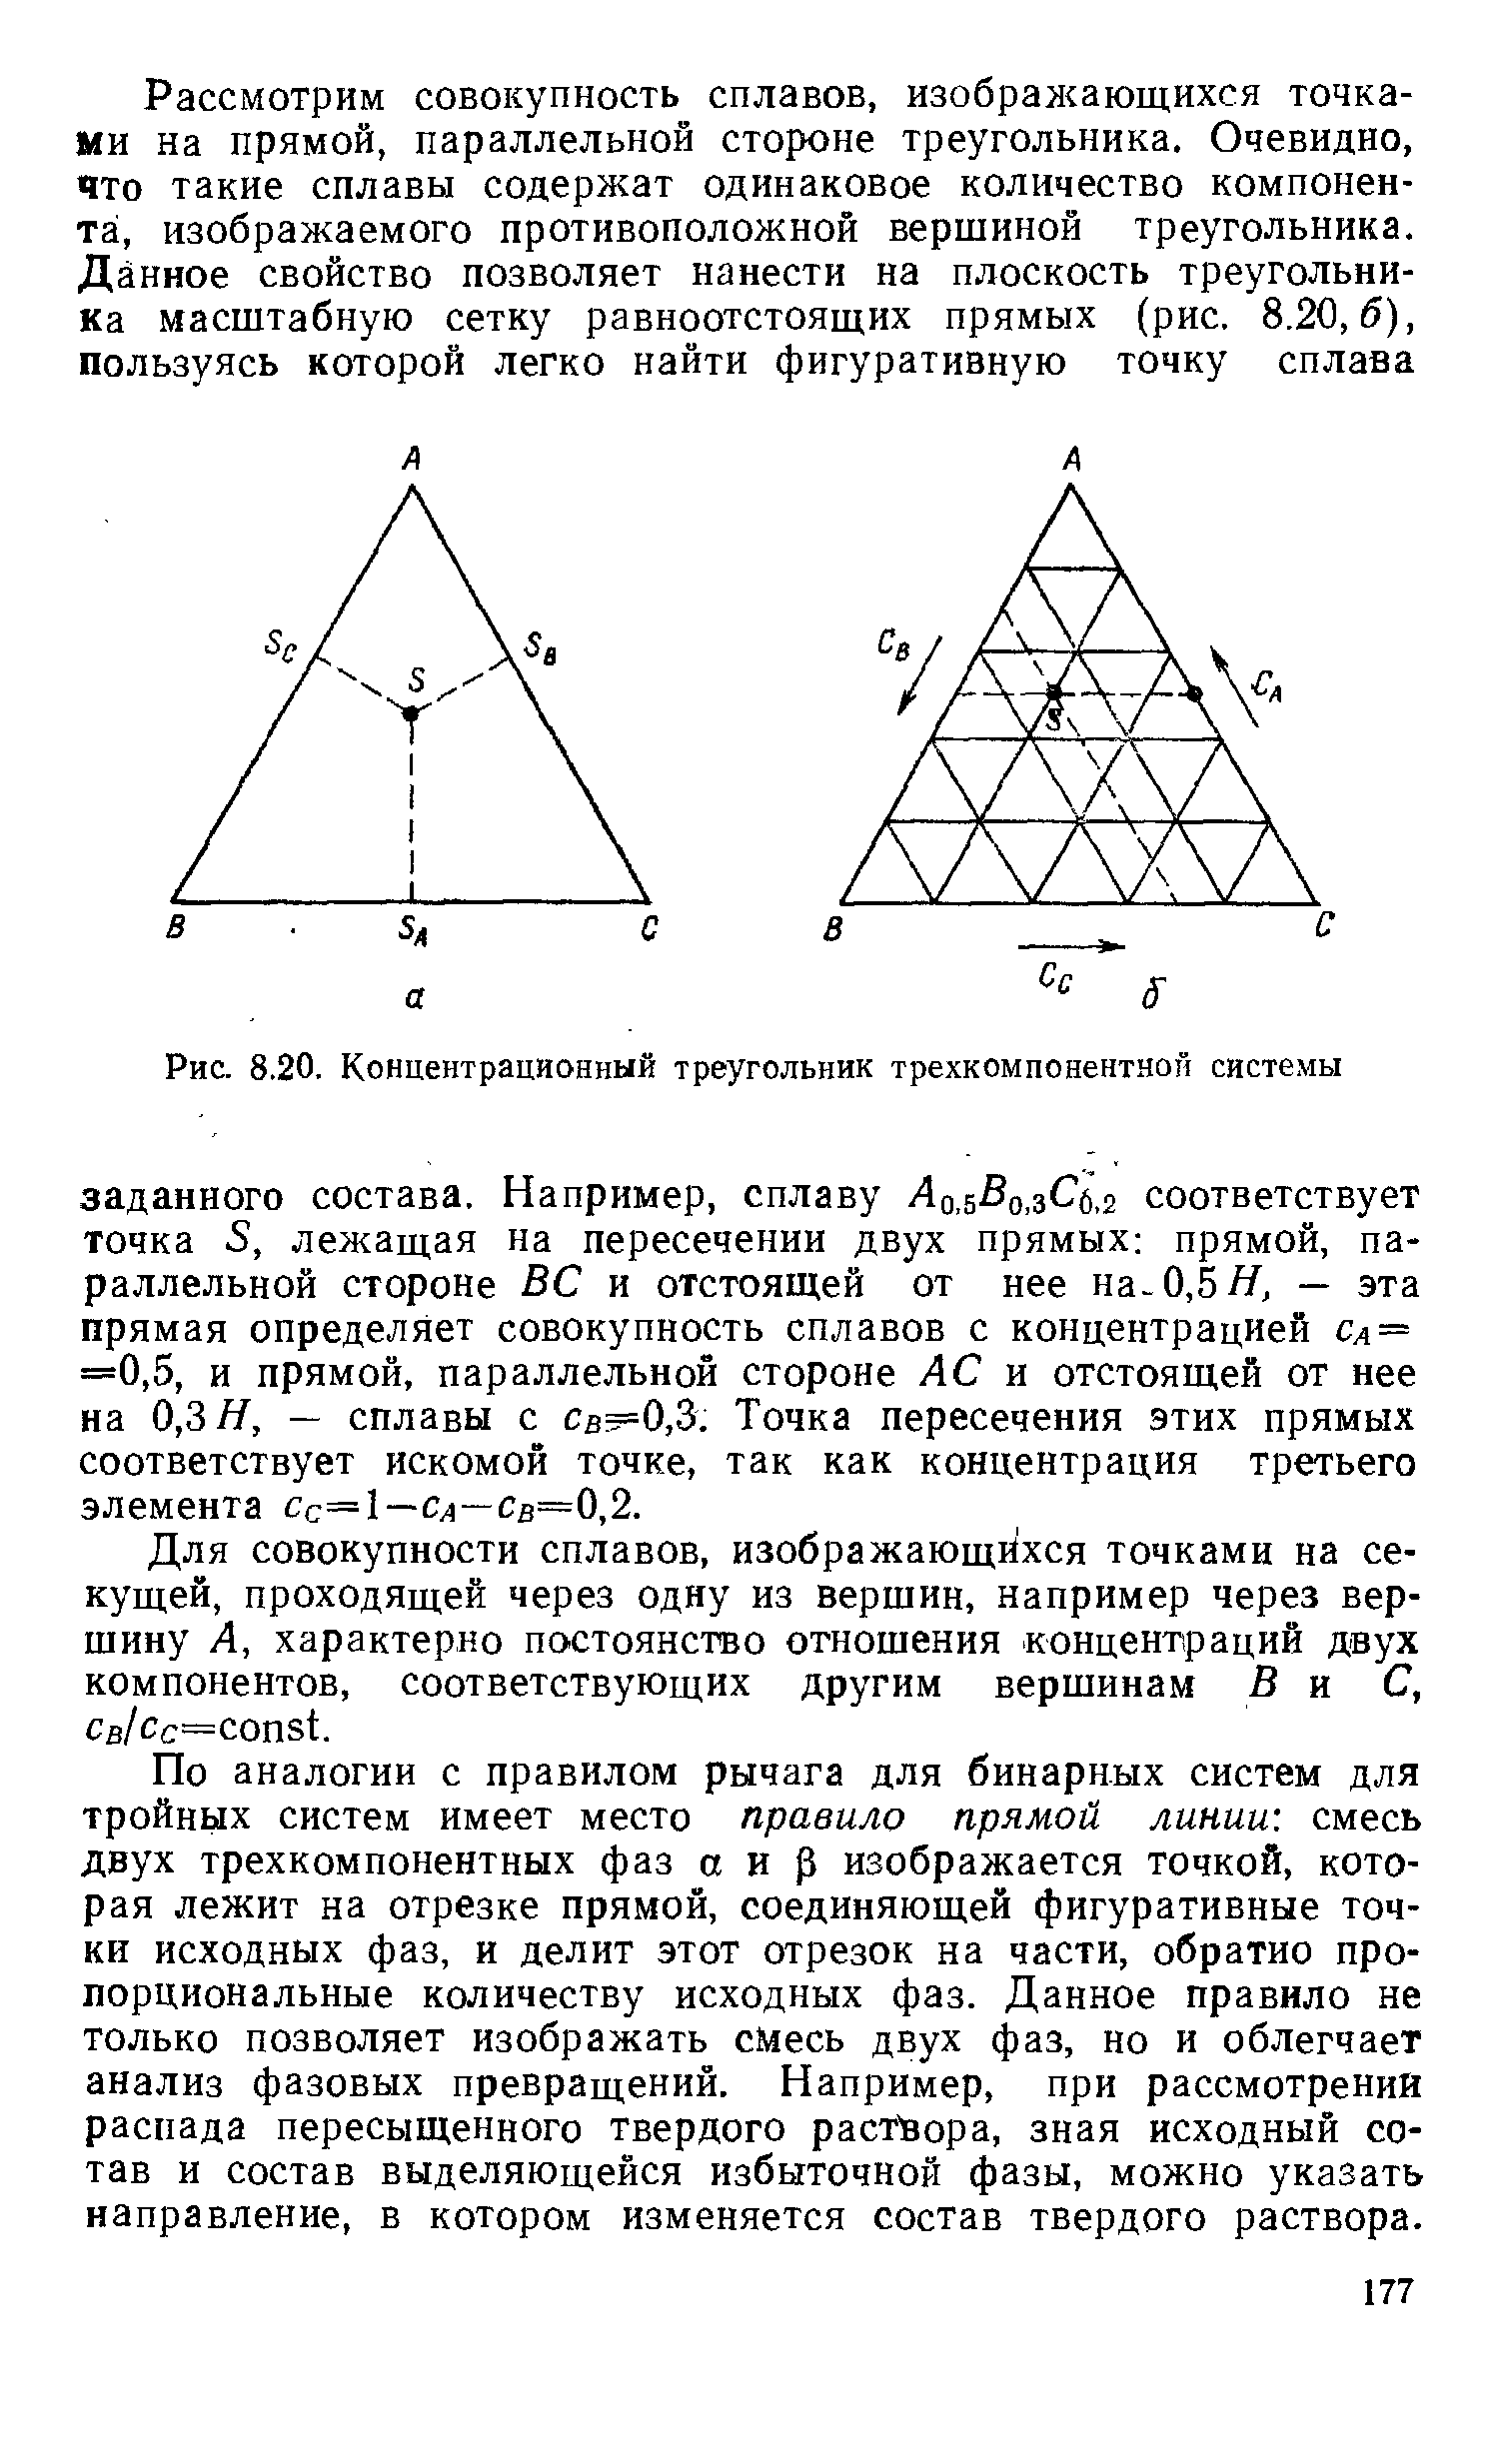 Рис. 8.20, <a href="/info/125061">Концентрационный треугольник</a> трехкомпонентной системы
